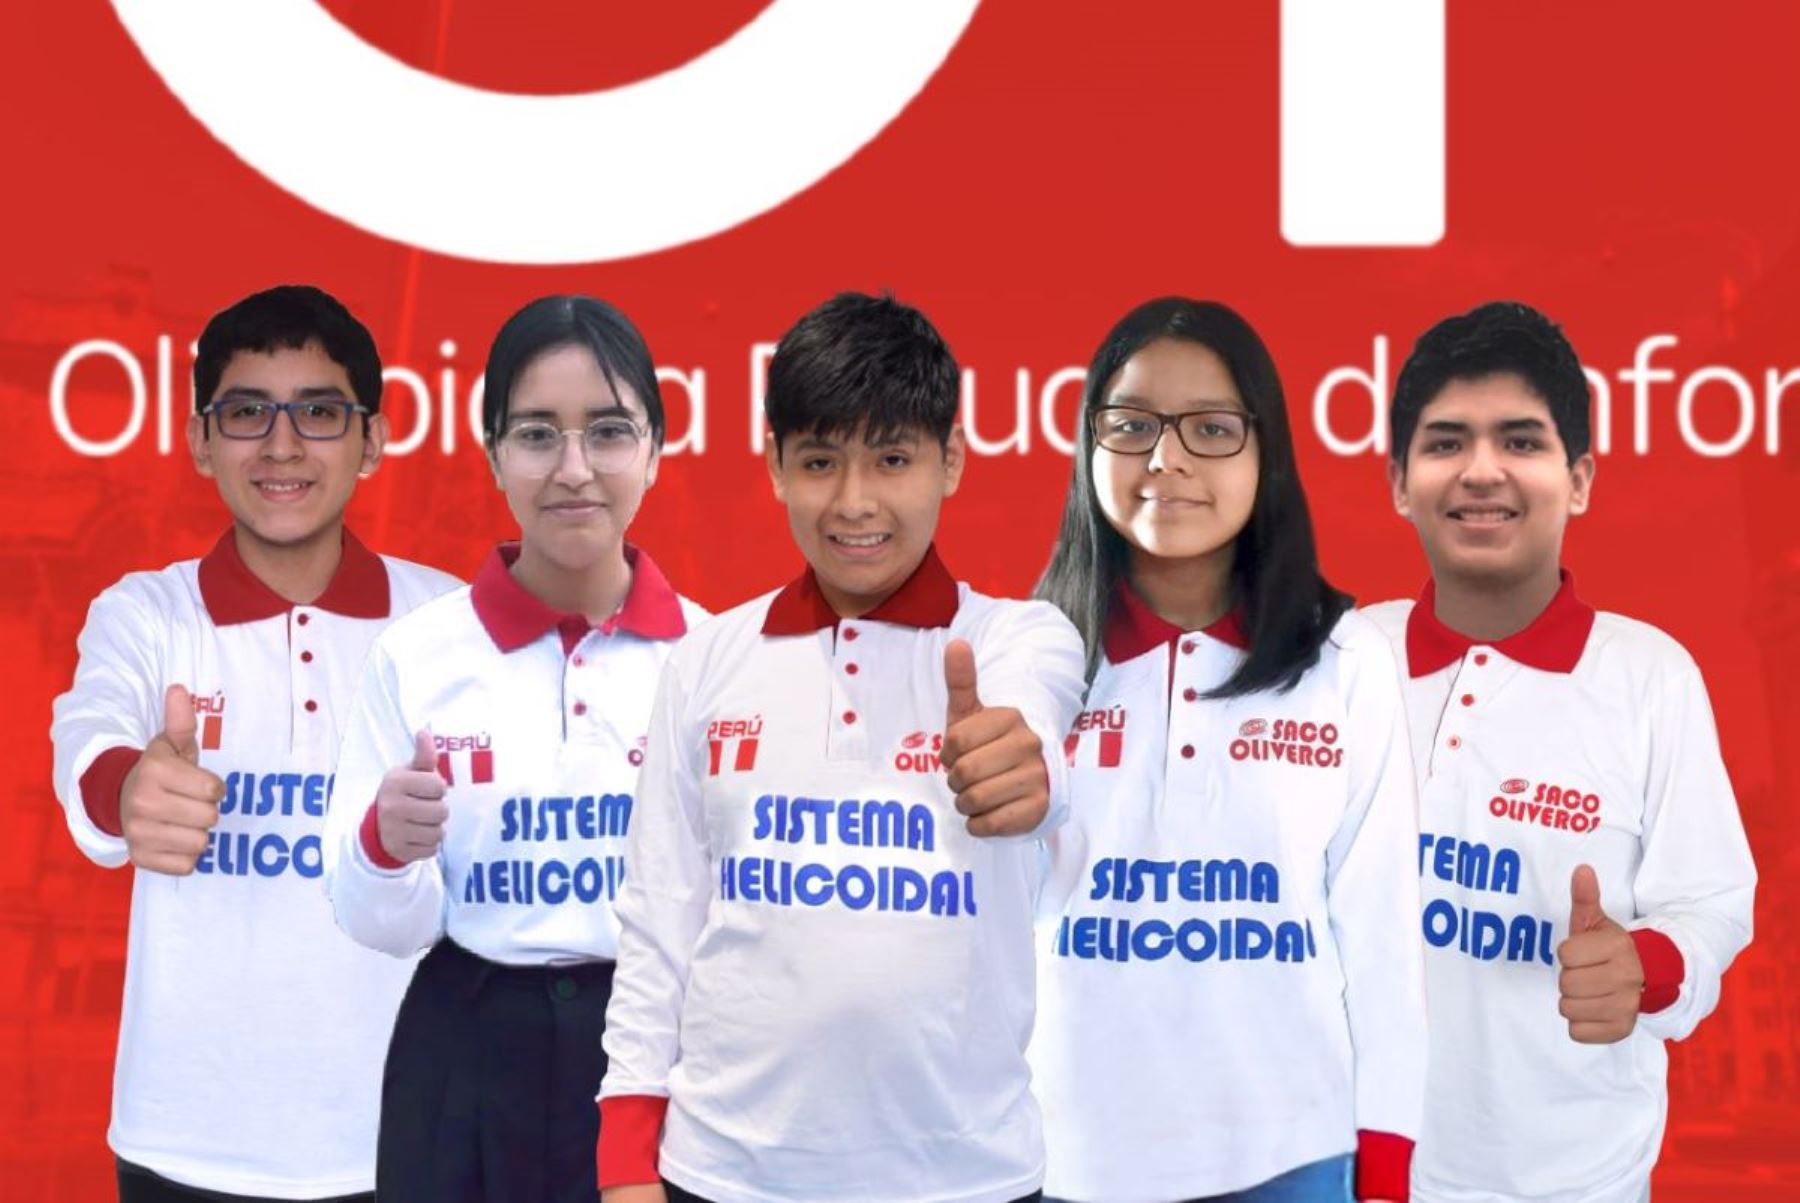 Peruano é tricampeão da Olimpíada Ibero-Americana de Informática |  Notícias